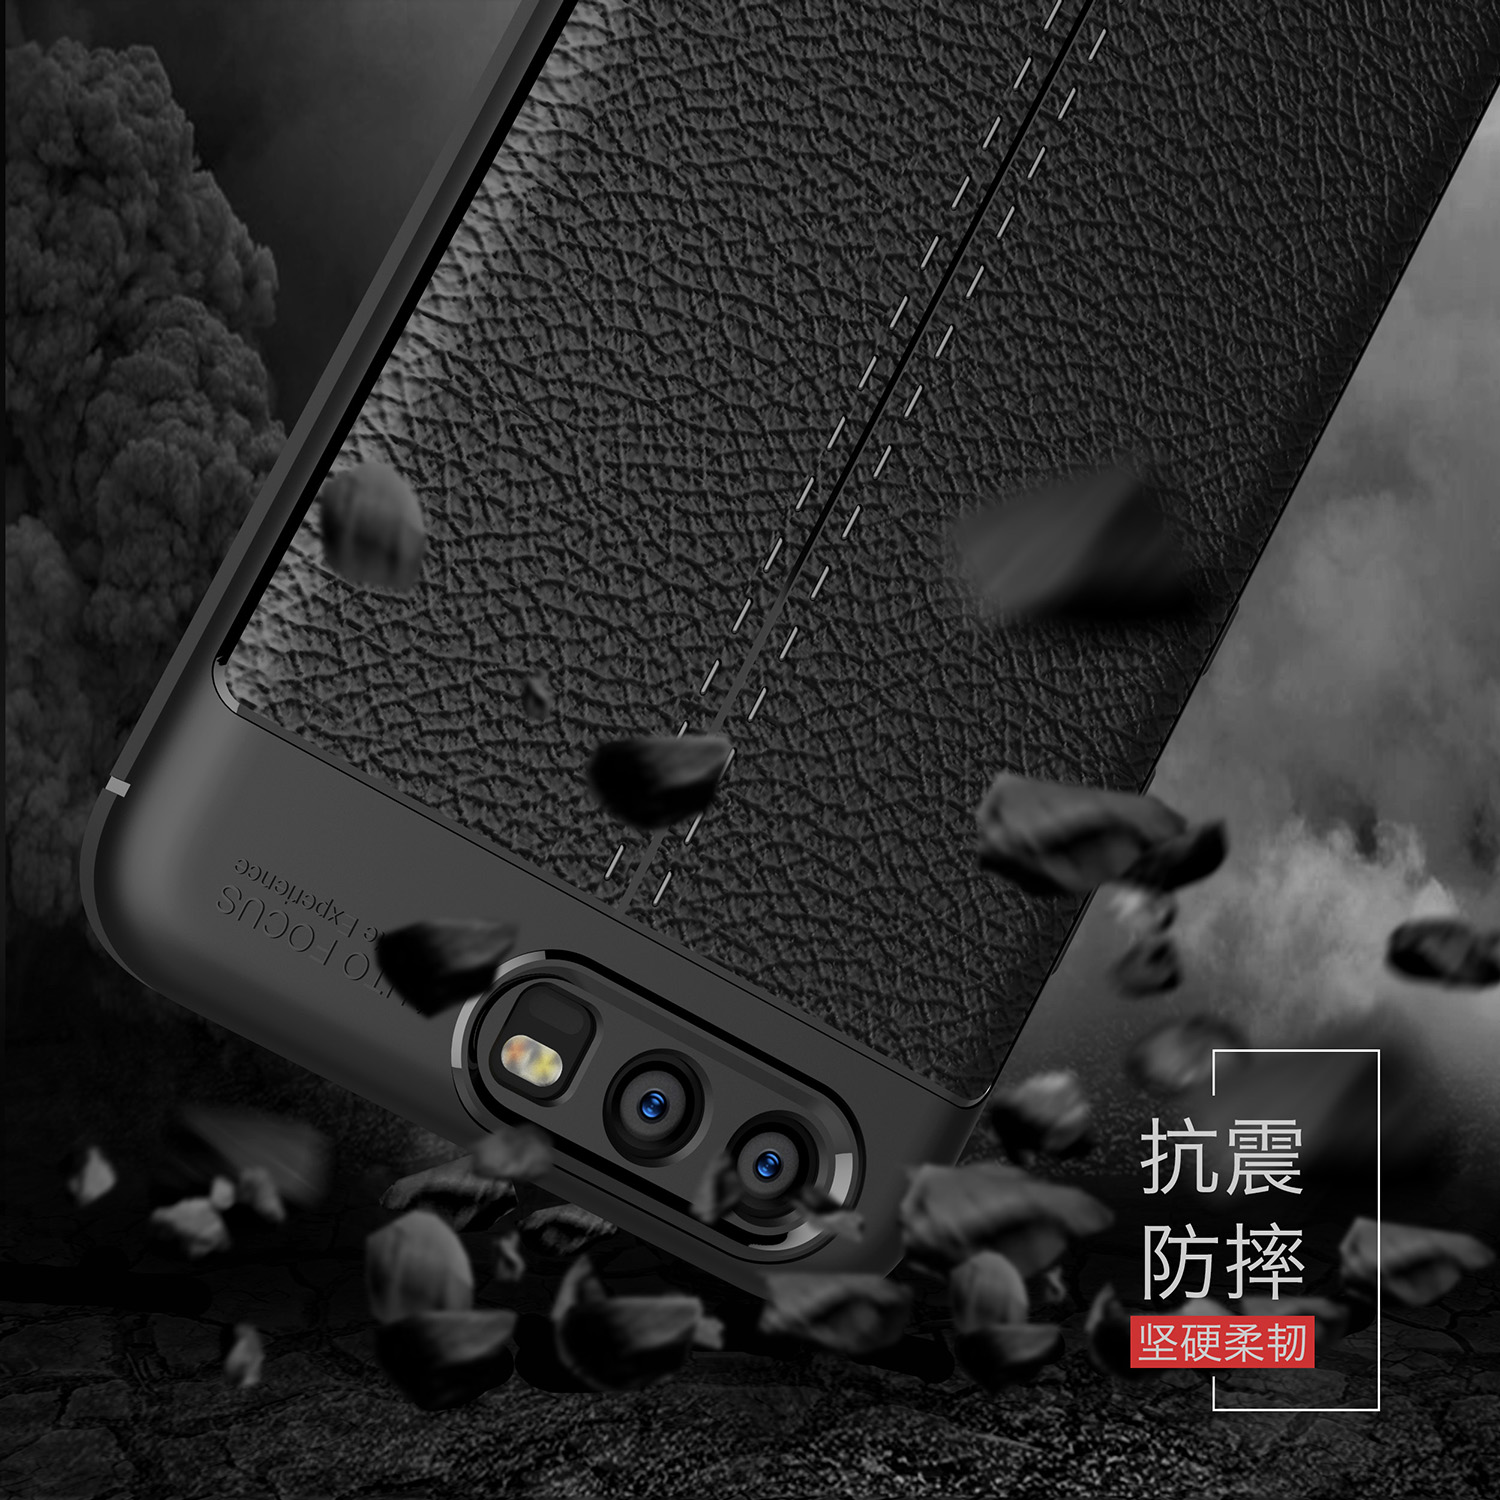 قاب چرم گوشی AutoFocus leather case | Huawei P10 plus